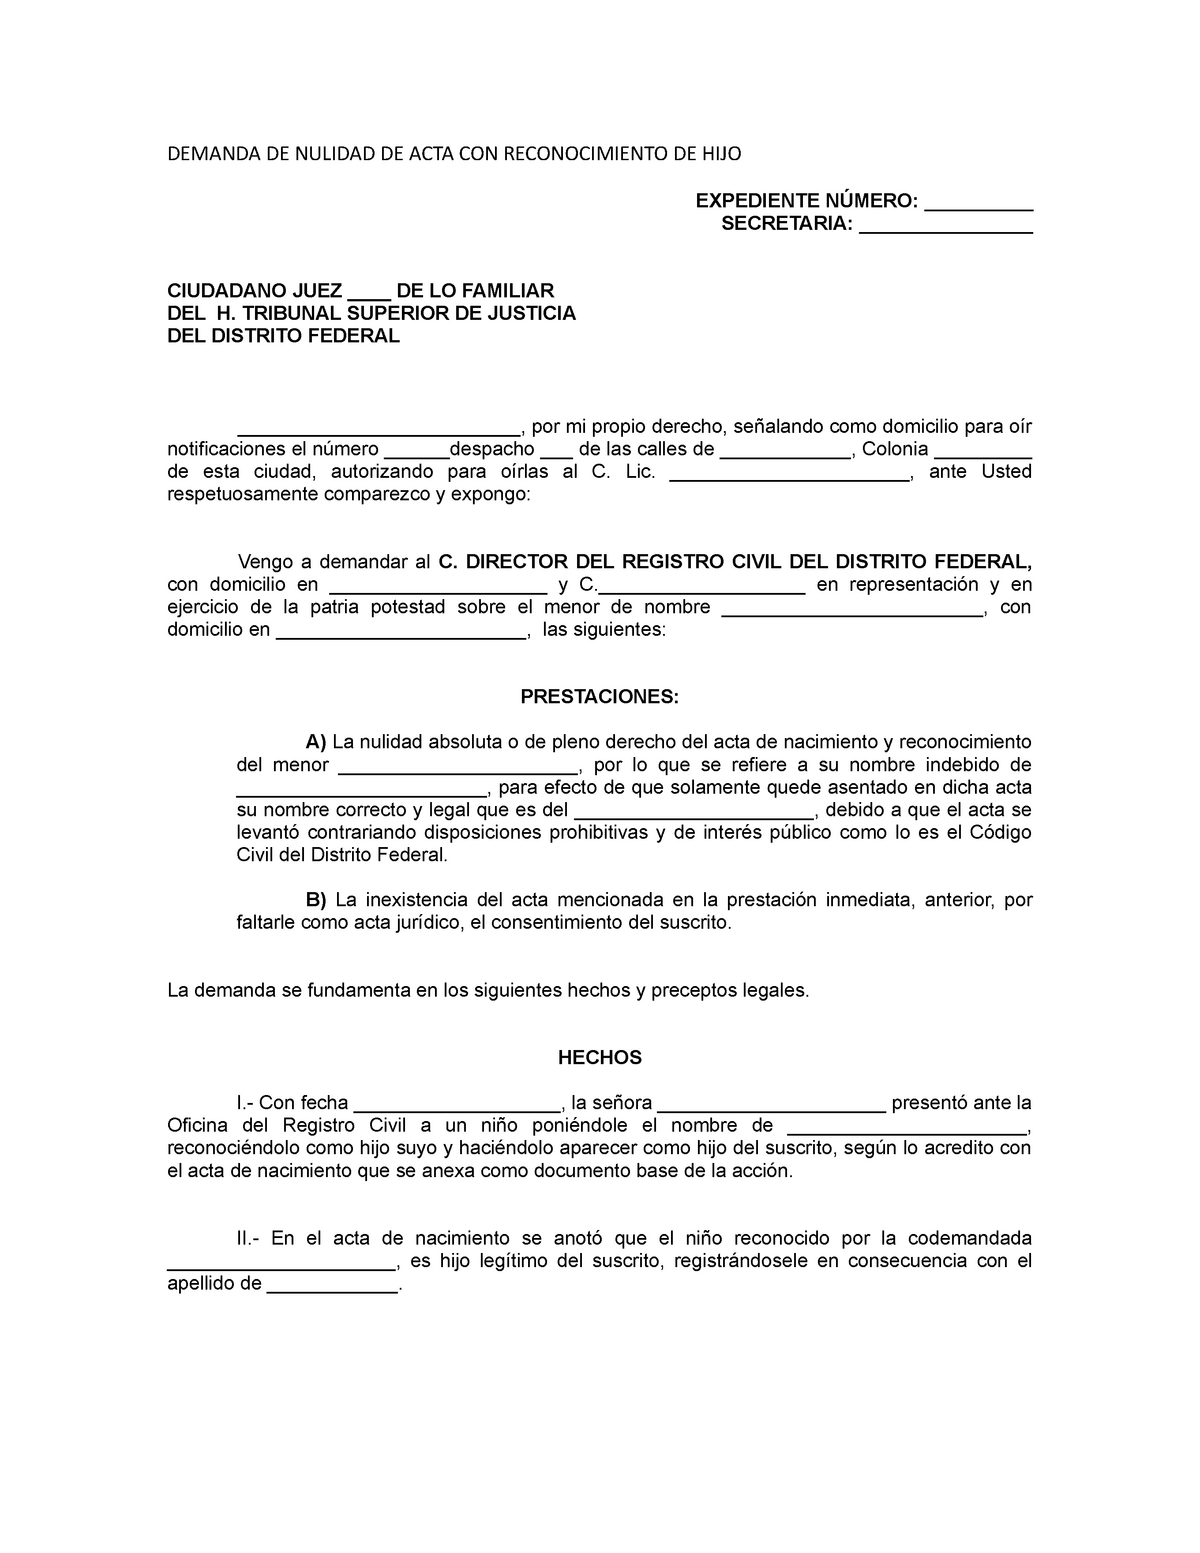 Demanda DE Nulidad DE ACTA CON Reconocimiento DE HIJO - DEMANDA DE NULIDAD  DE ACTA CON - Studocu